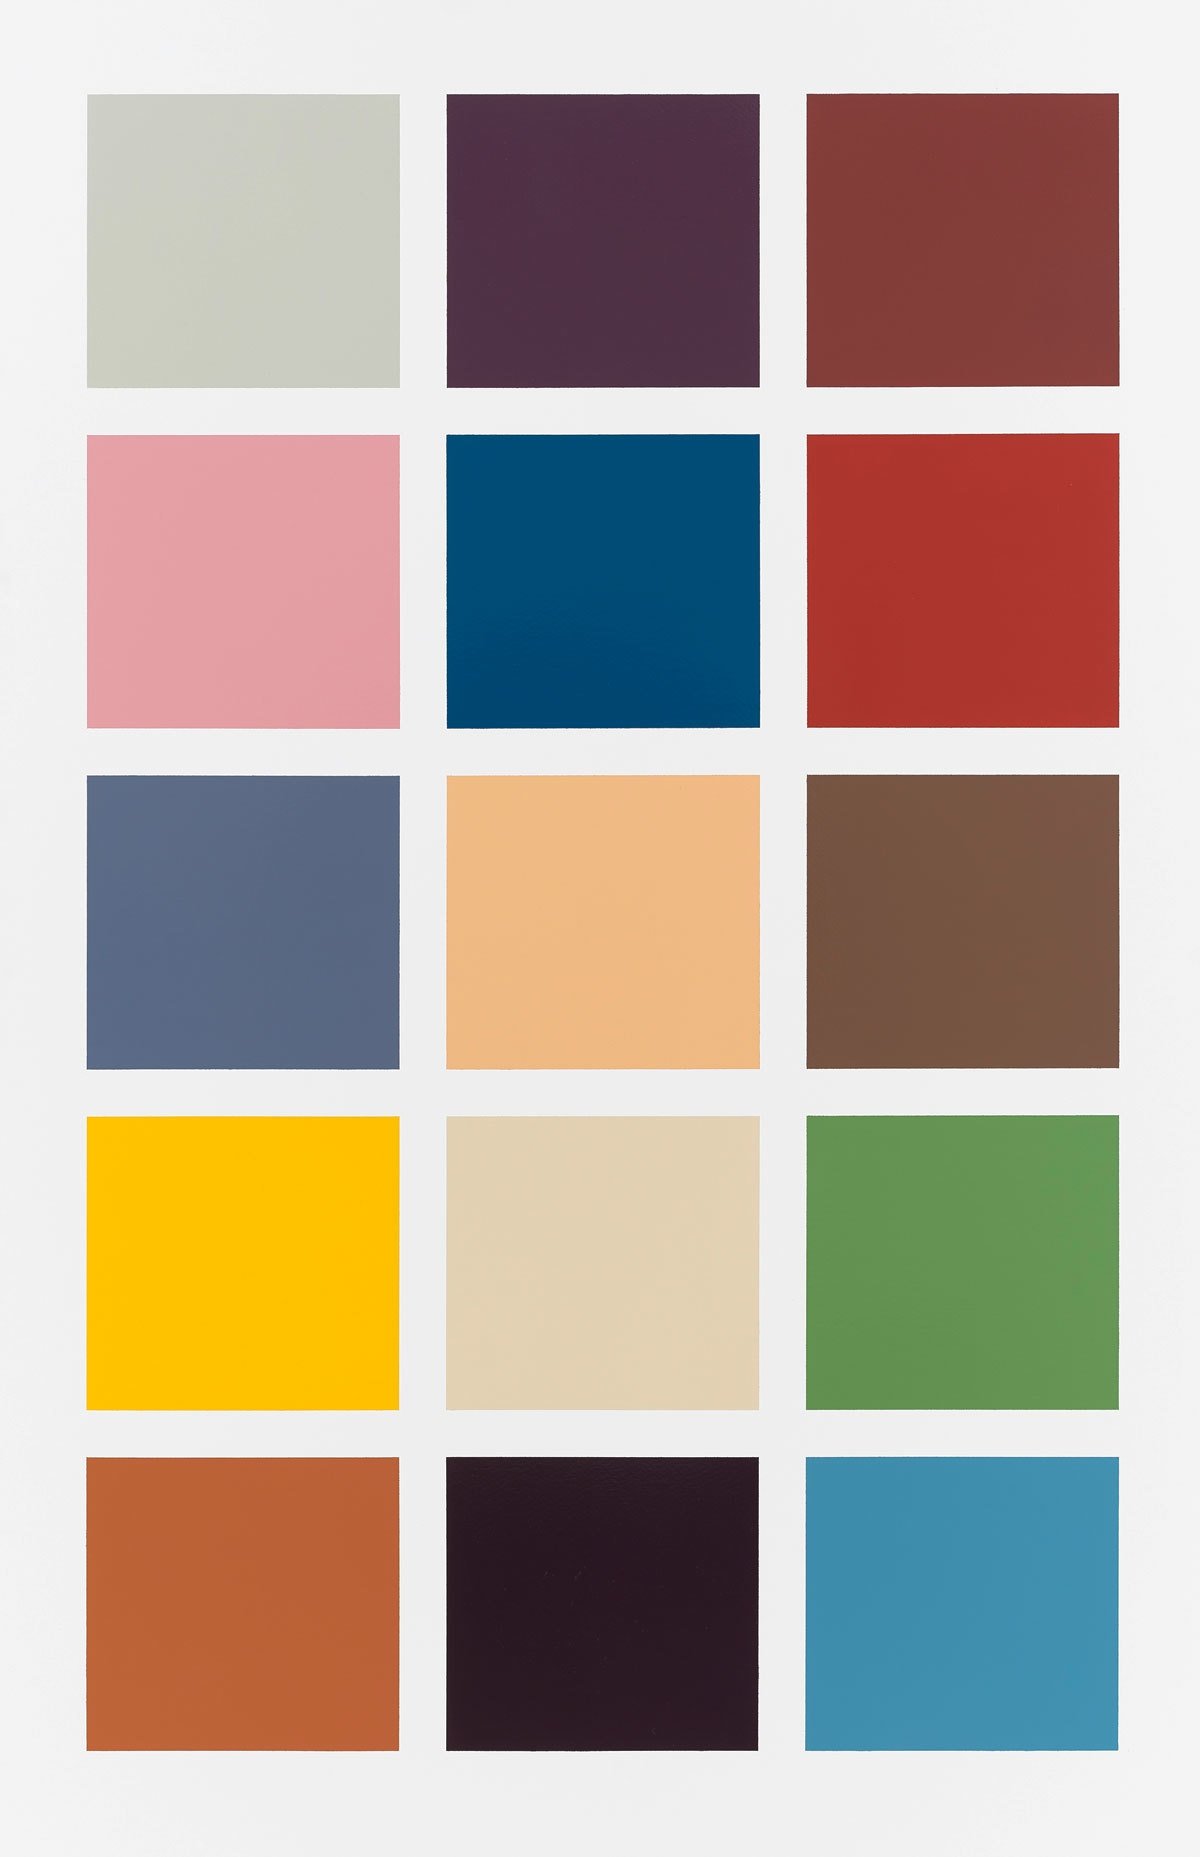 Gerhard Richter, Fünfzehn Farben (Fifteen Colours), 1966. Photo: © Gerhard Richter, Tom Powel Imaging, Inc.